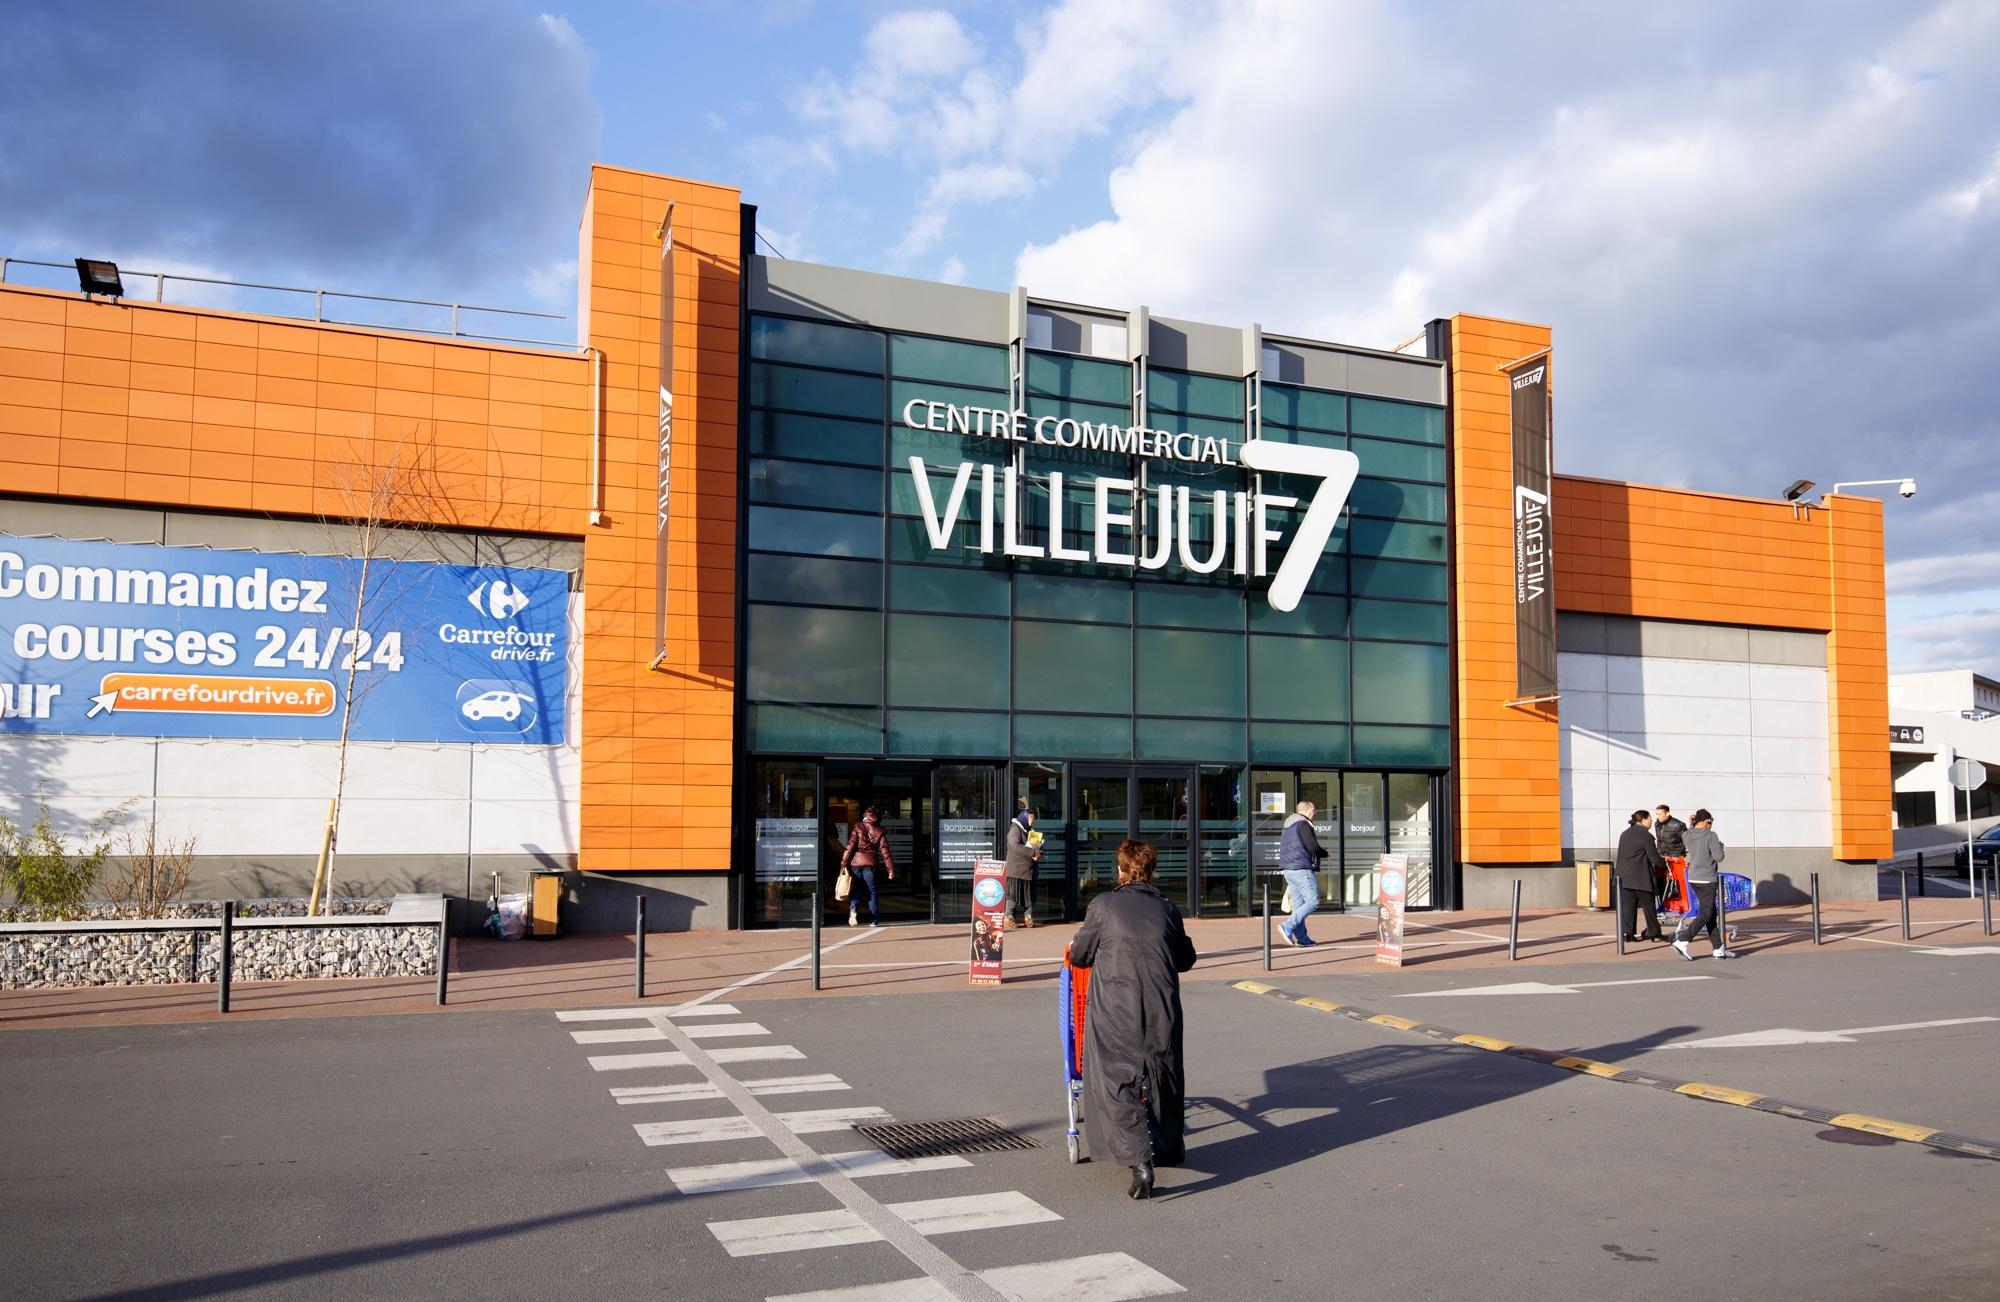 Centre Commercial Carrefour Villejuif7  Villejuif